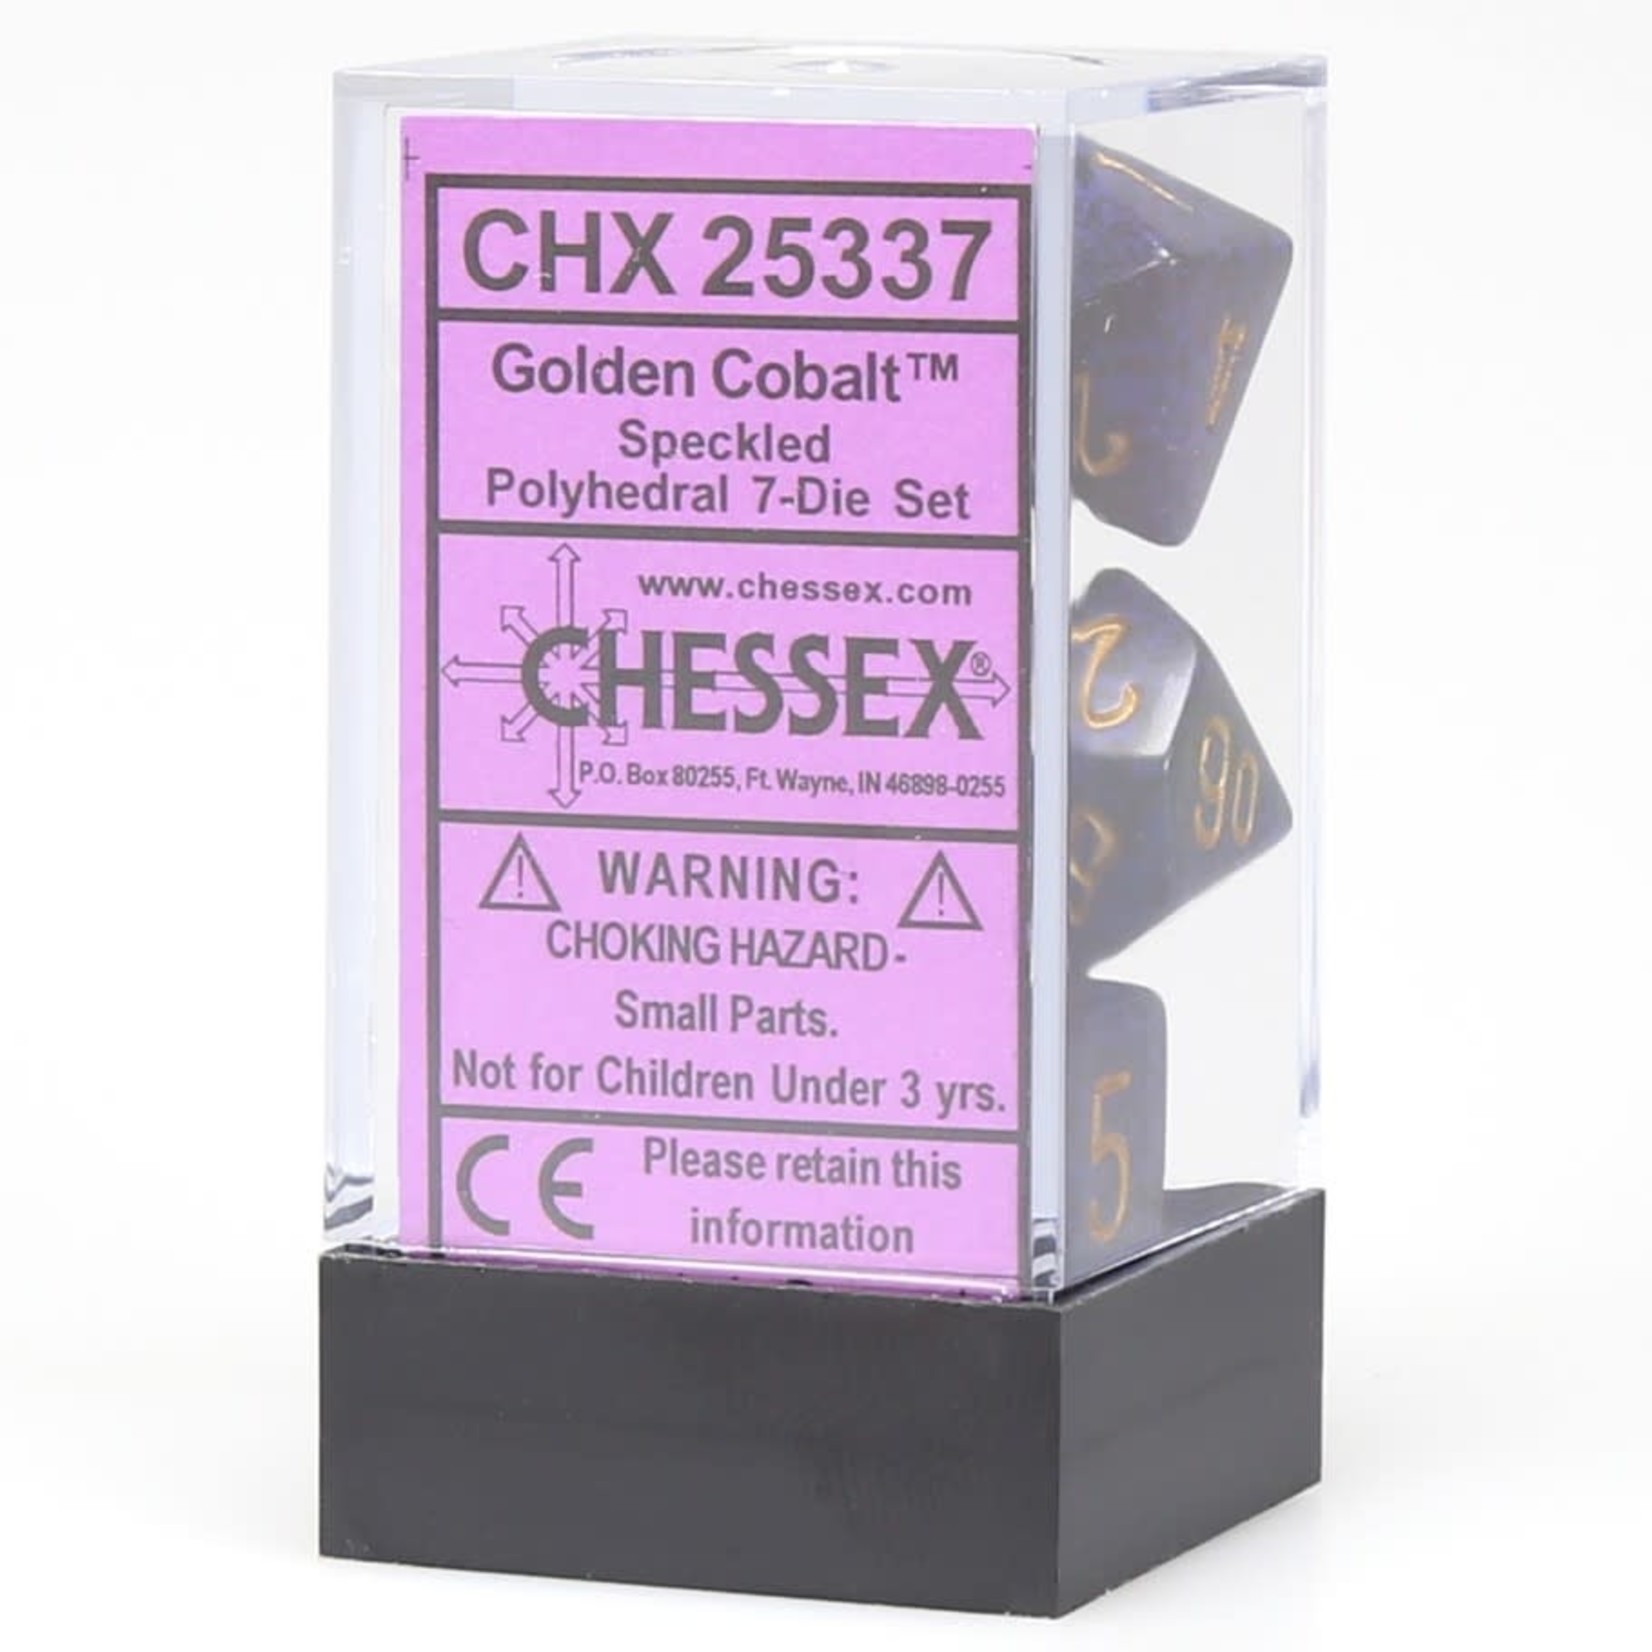 Chessex Speckled Polyhedral 7-Die Set: Golden Cobalt